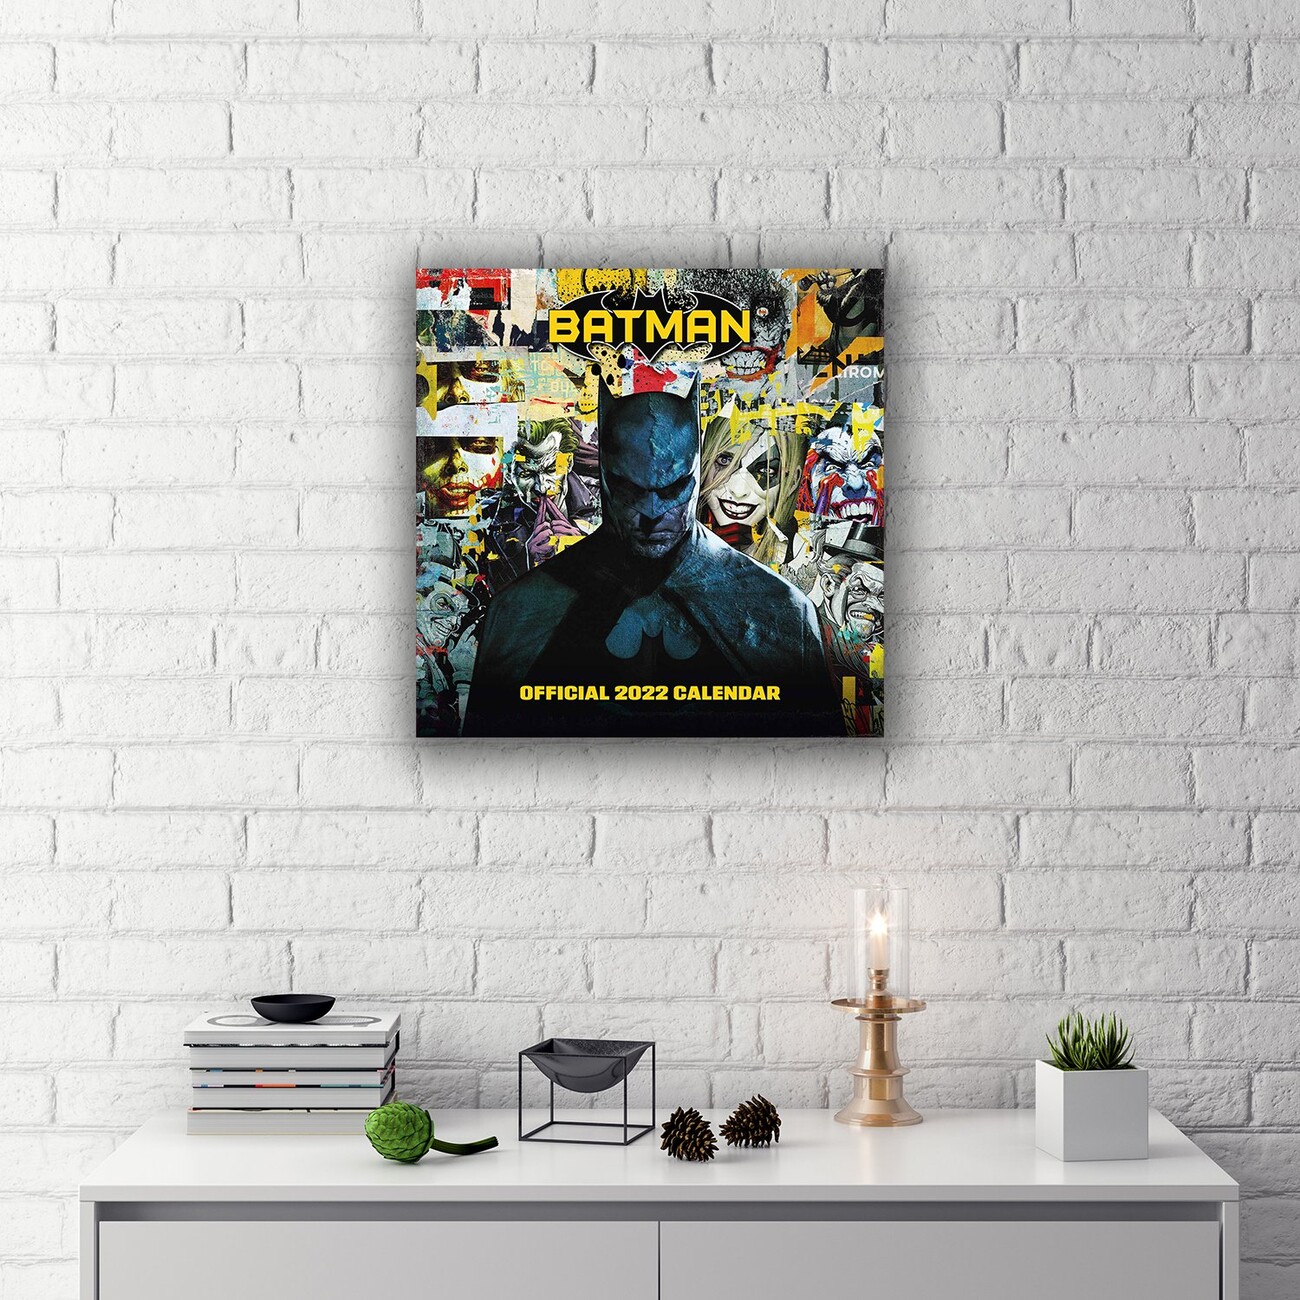 Calendario DC Comics Calendario 12 meses Calendario 2022 pared Calendario  anual│ Calendario de pared Producto con licencia oficial Calendario mensual  Calendario Batman 2022 incluye póster Descubre tu marca favorita Promoción  en línea